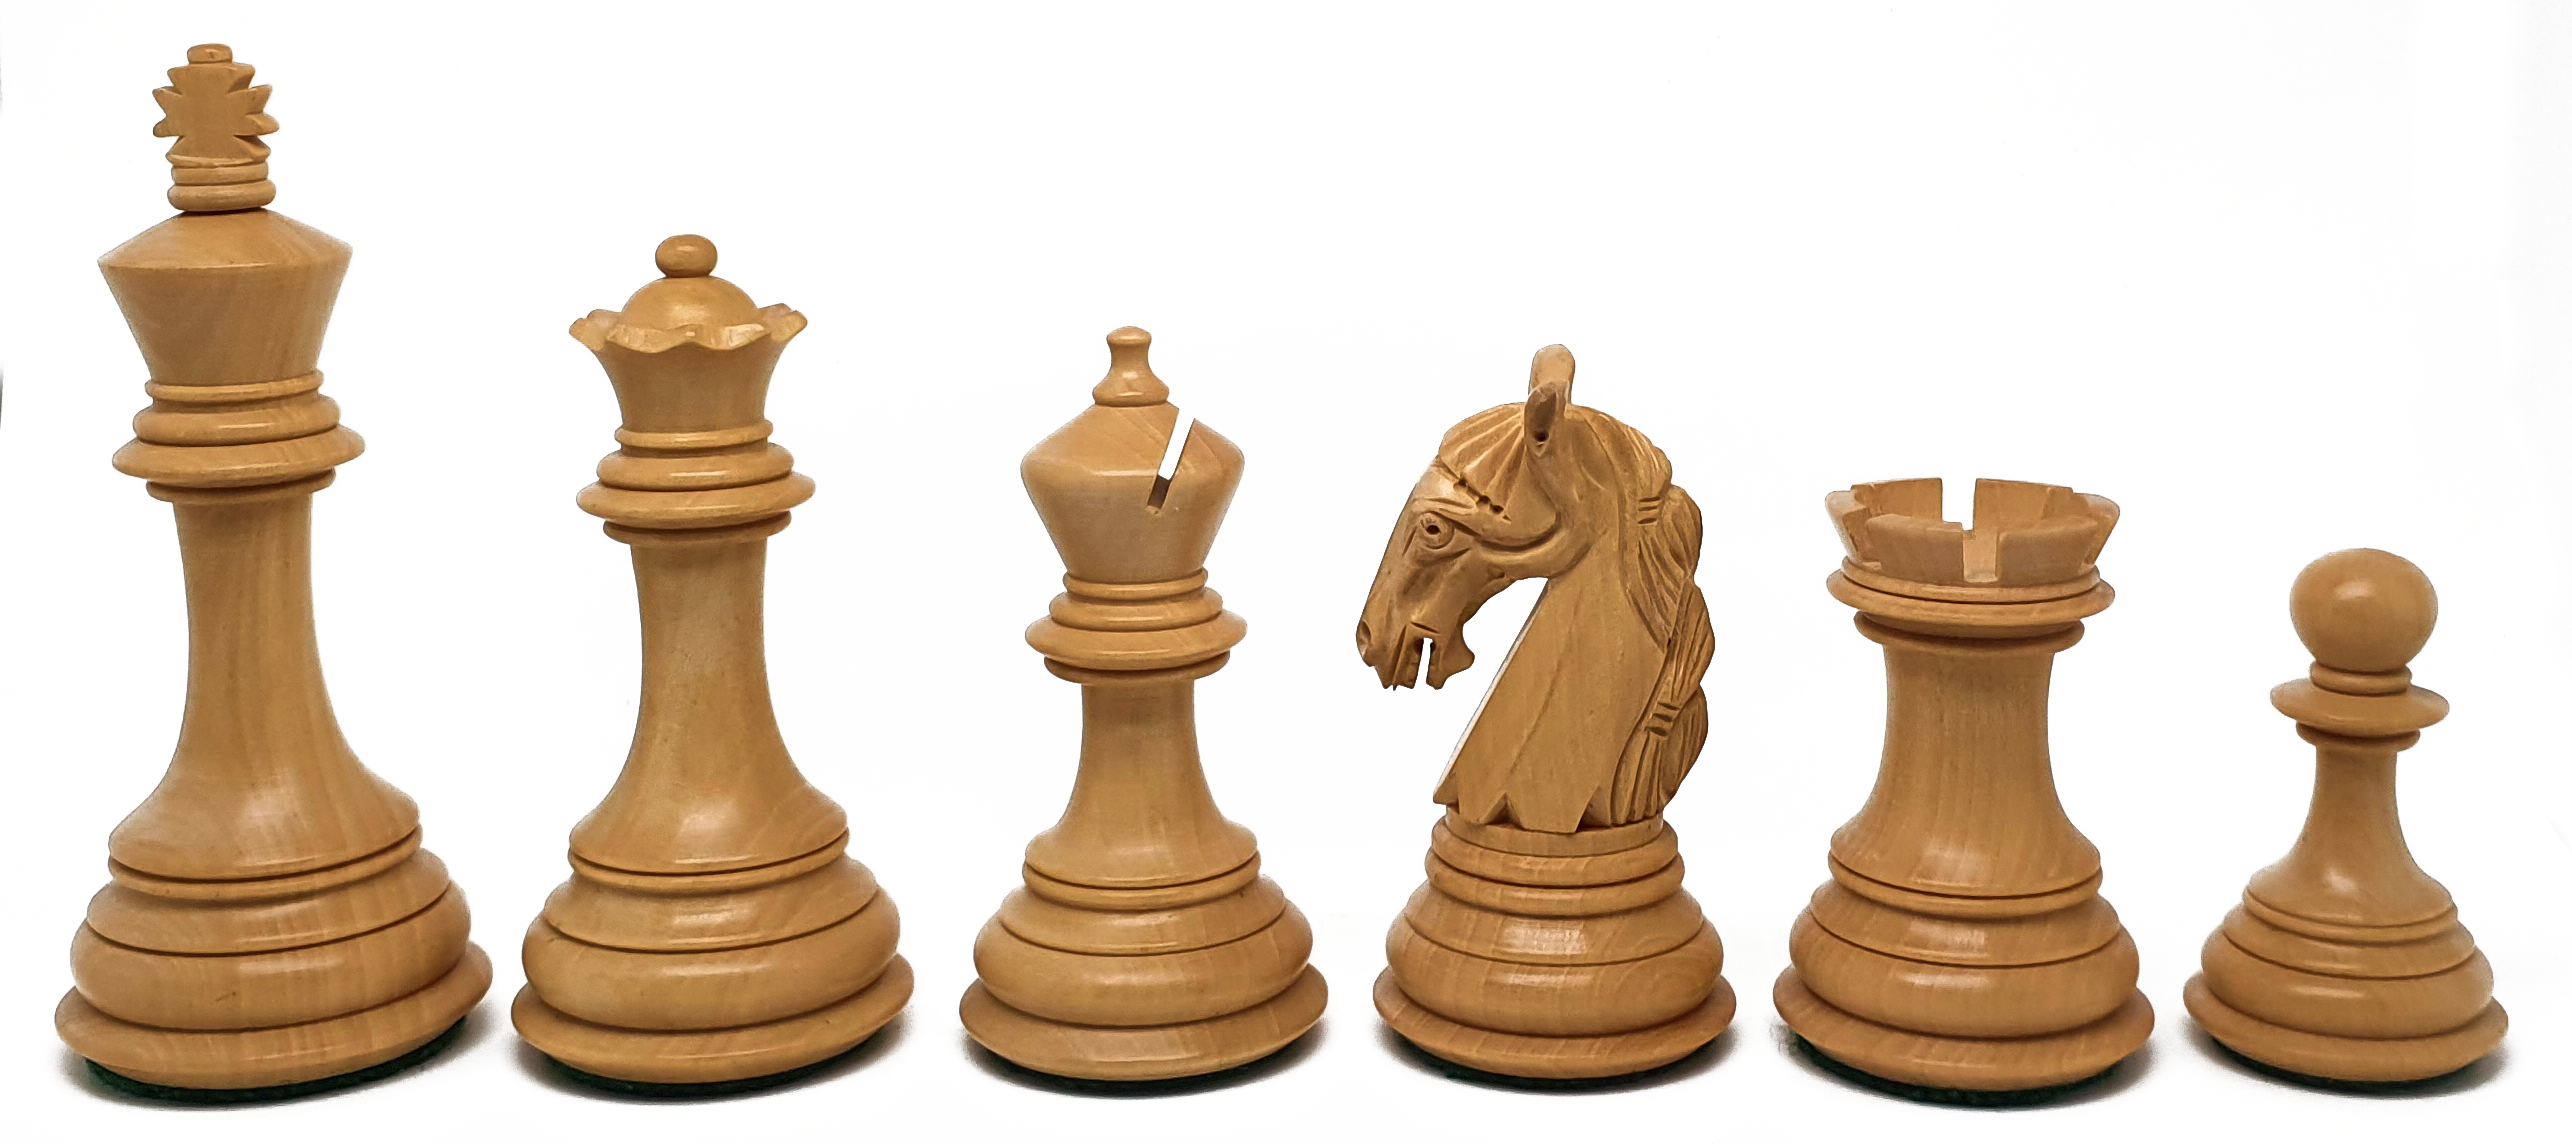 VI/ Piezas de ajedrez modelo Elegant "3,75" Ebanizado.